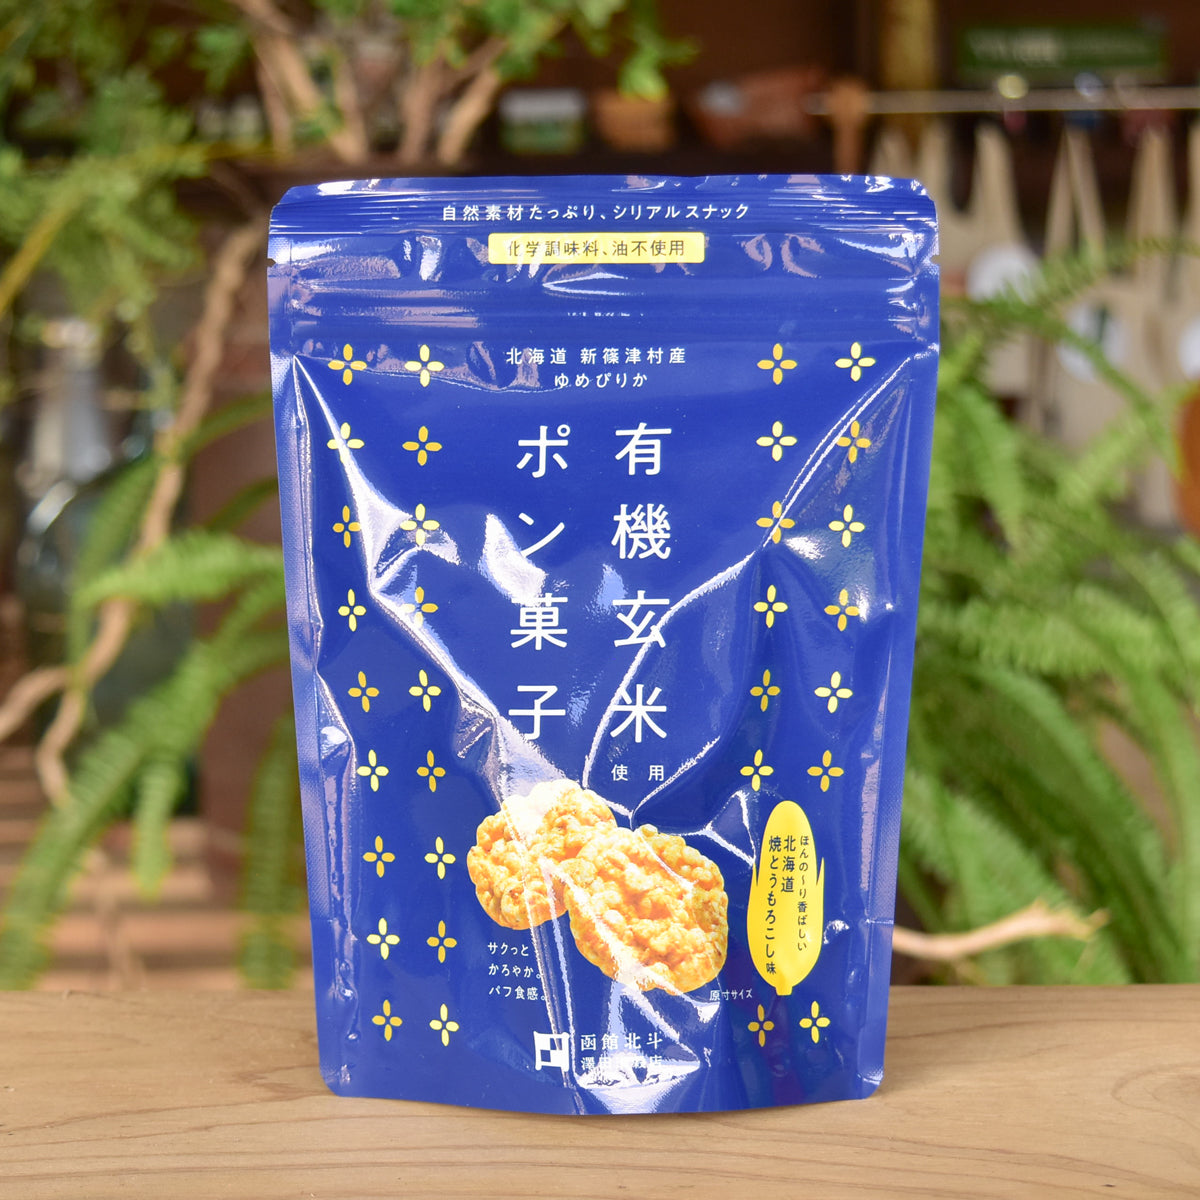 50%OFF 澤田米穀店 有機玄米使用ポン菓子・焼とうもろこし味 32g せんべい・米菓